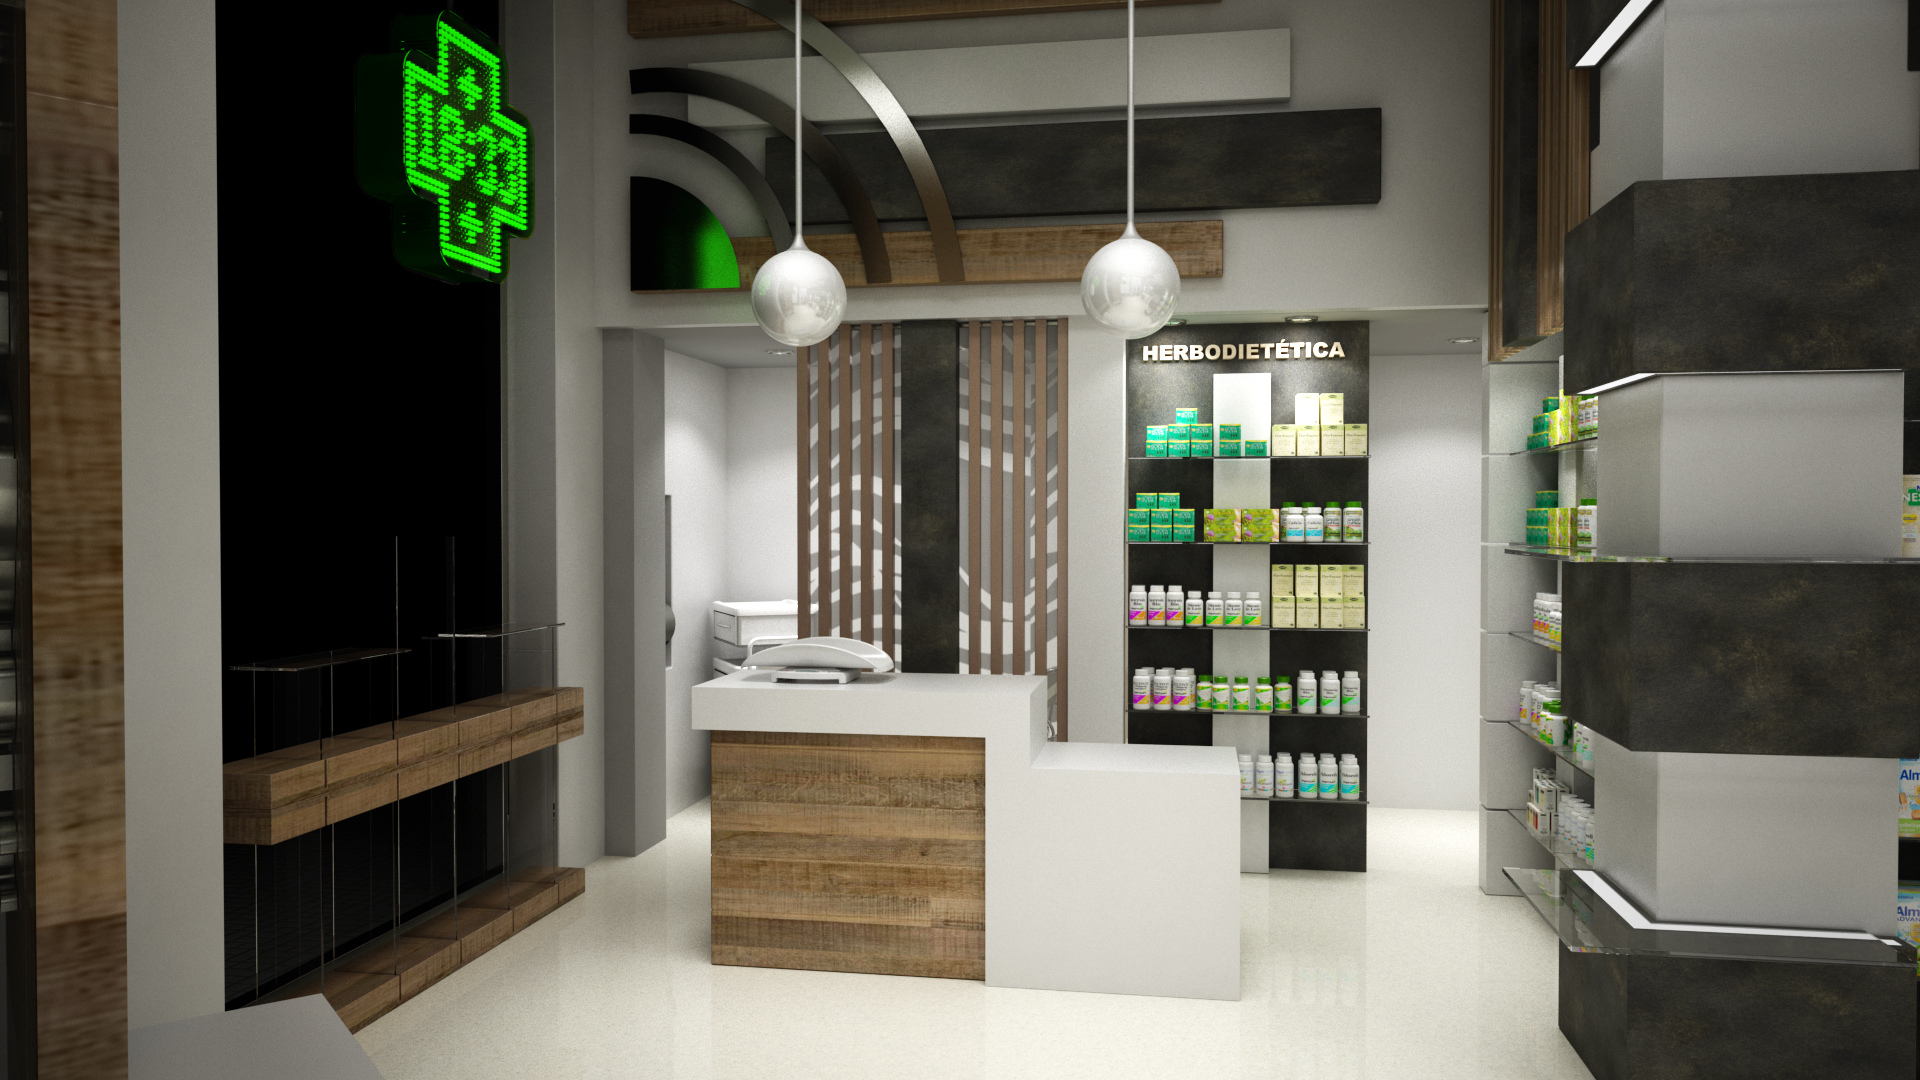 Conception de locaux commerciaux pour la pharmacie dans 3d max vray 3.0 image